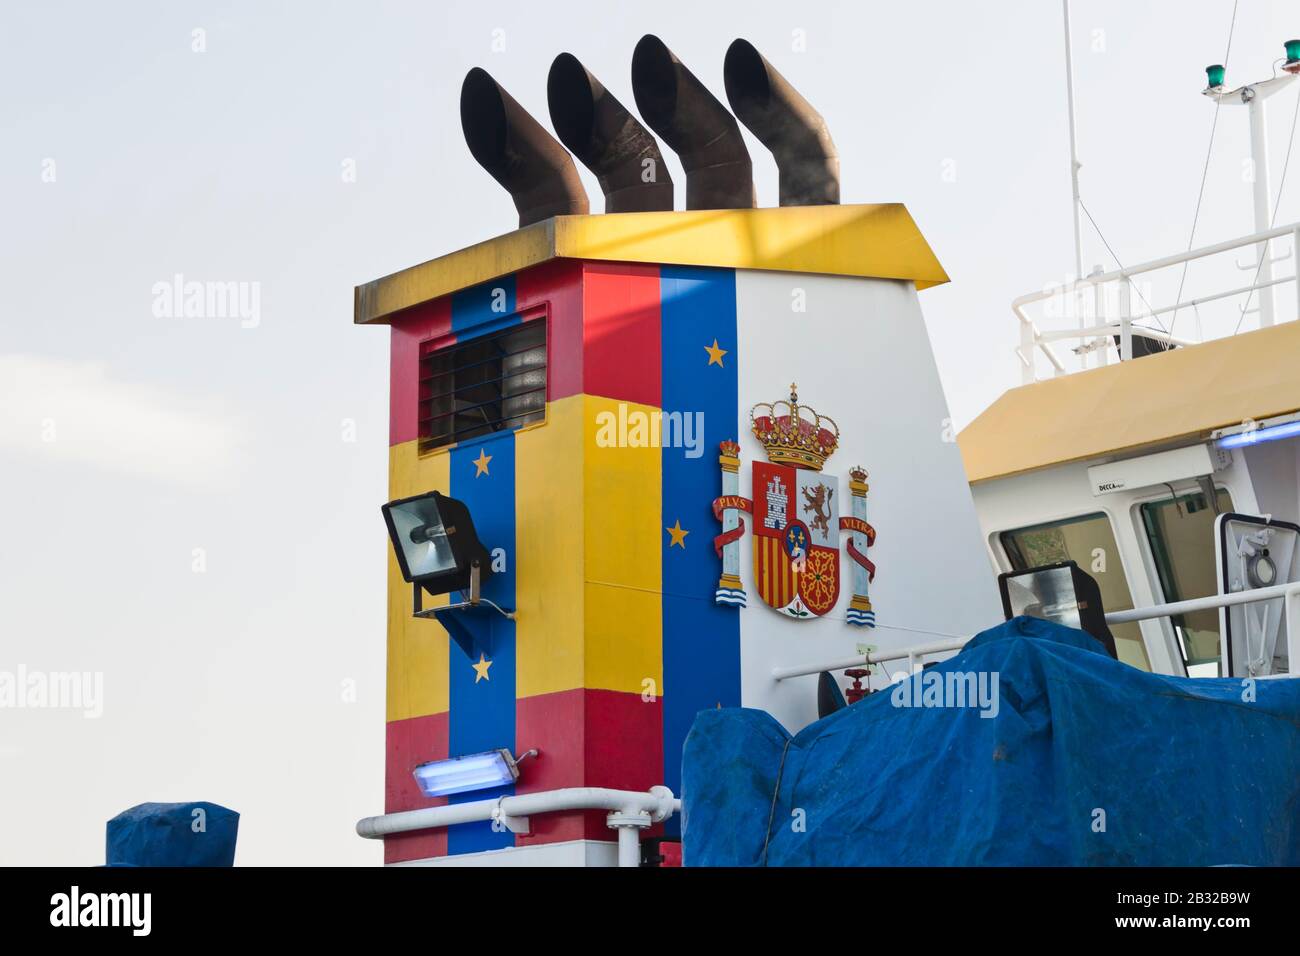 Vigo, Espagne - 24 janvier 2020: Angeles Alvariño navire de recherche océanographique polyvalent amarré au port le 24 janvier 2020 à Vigo, Pontevedr Banque D'Images